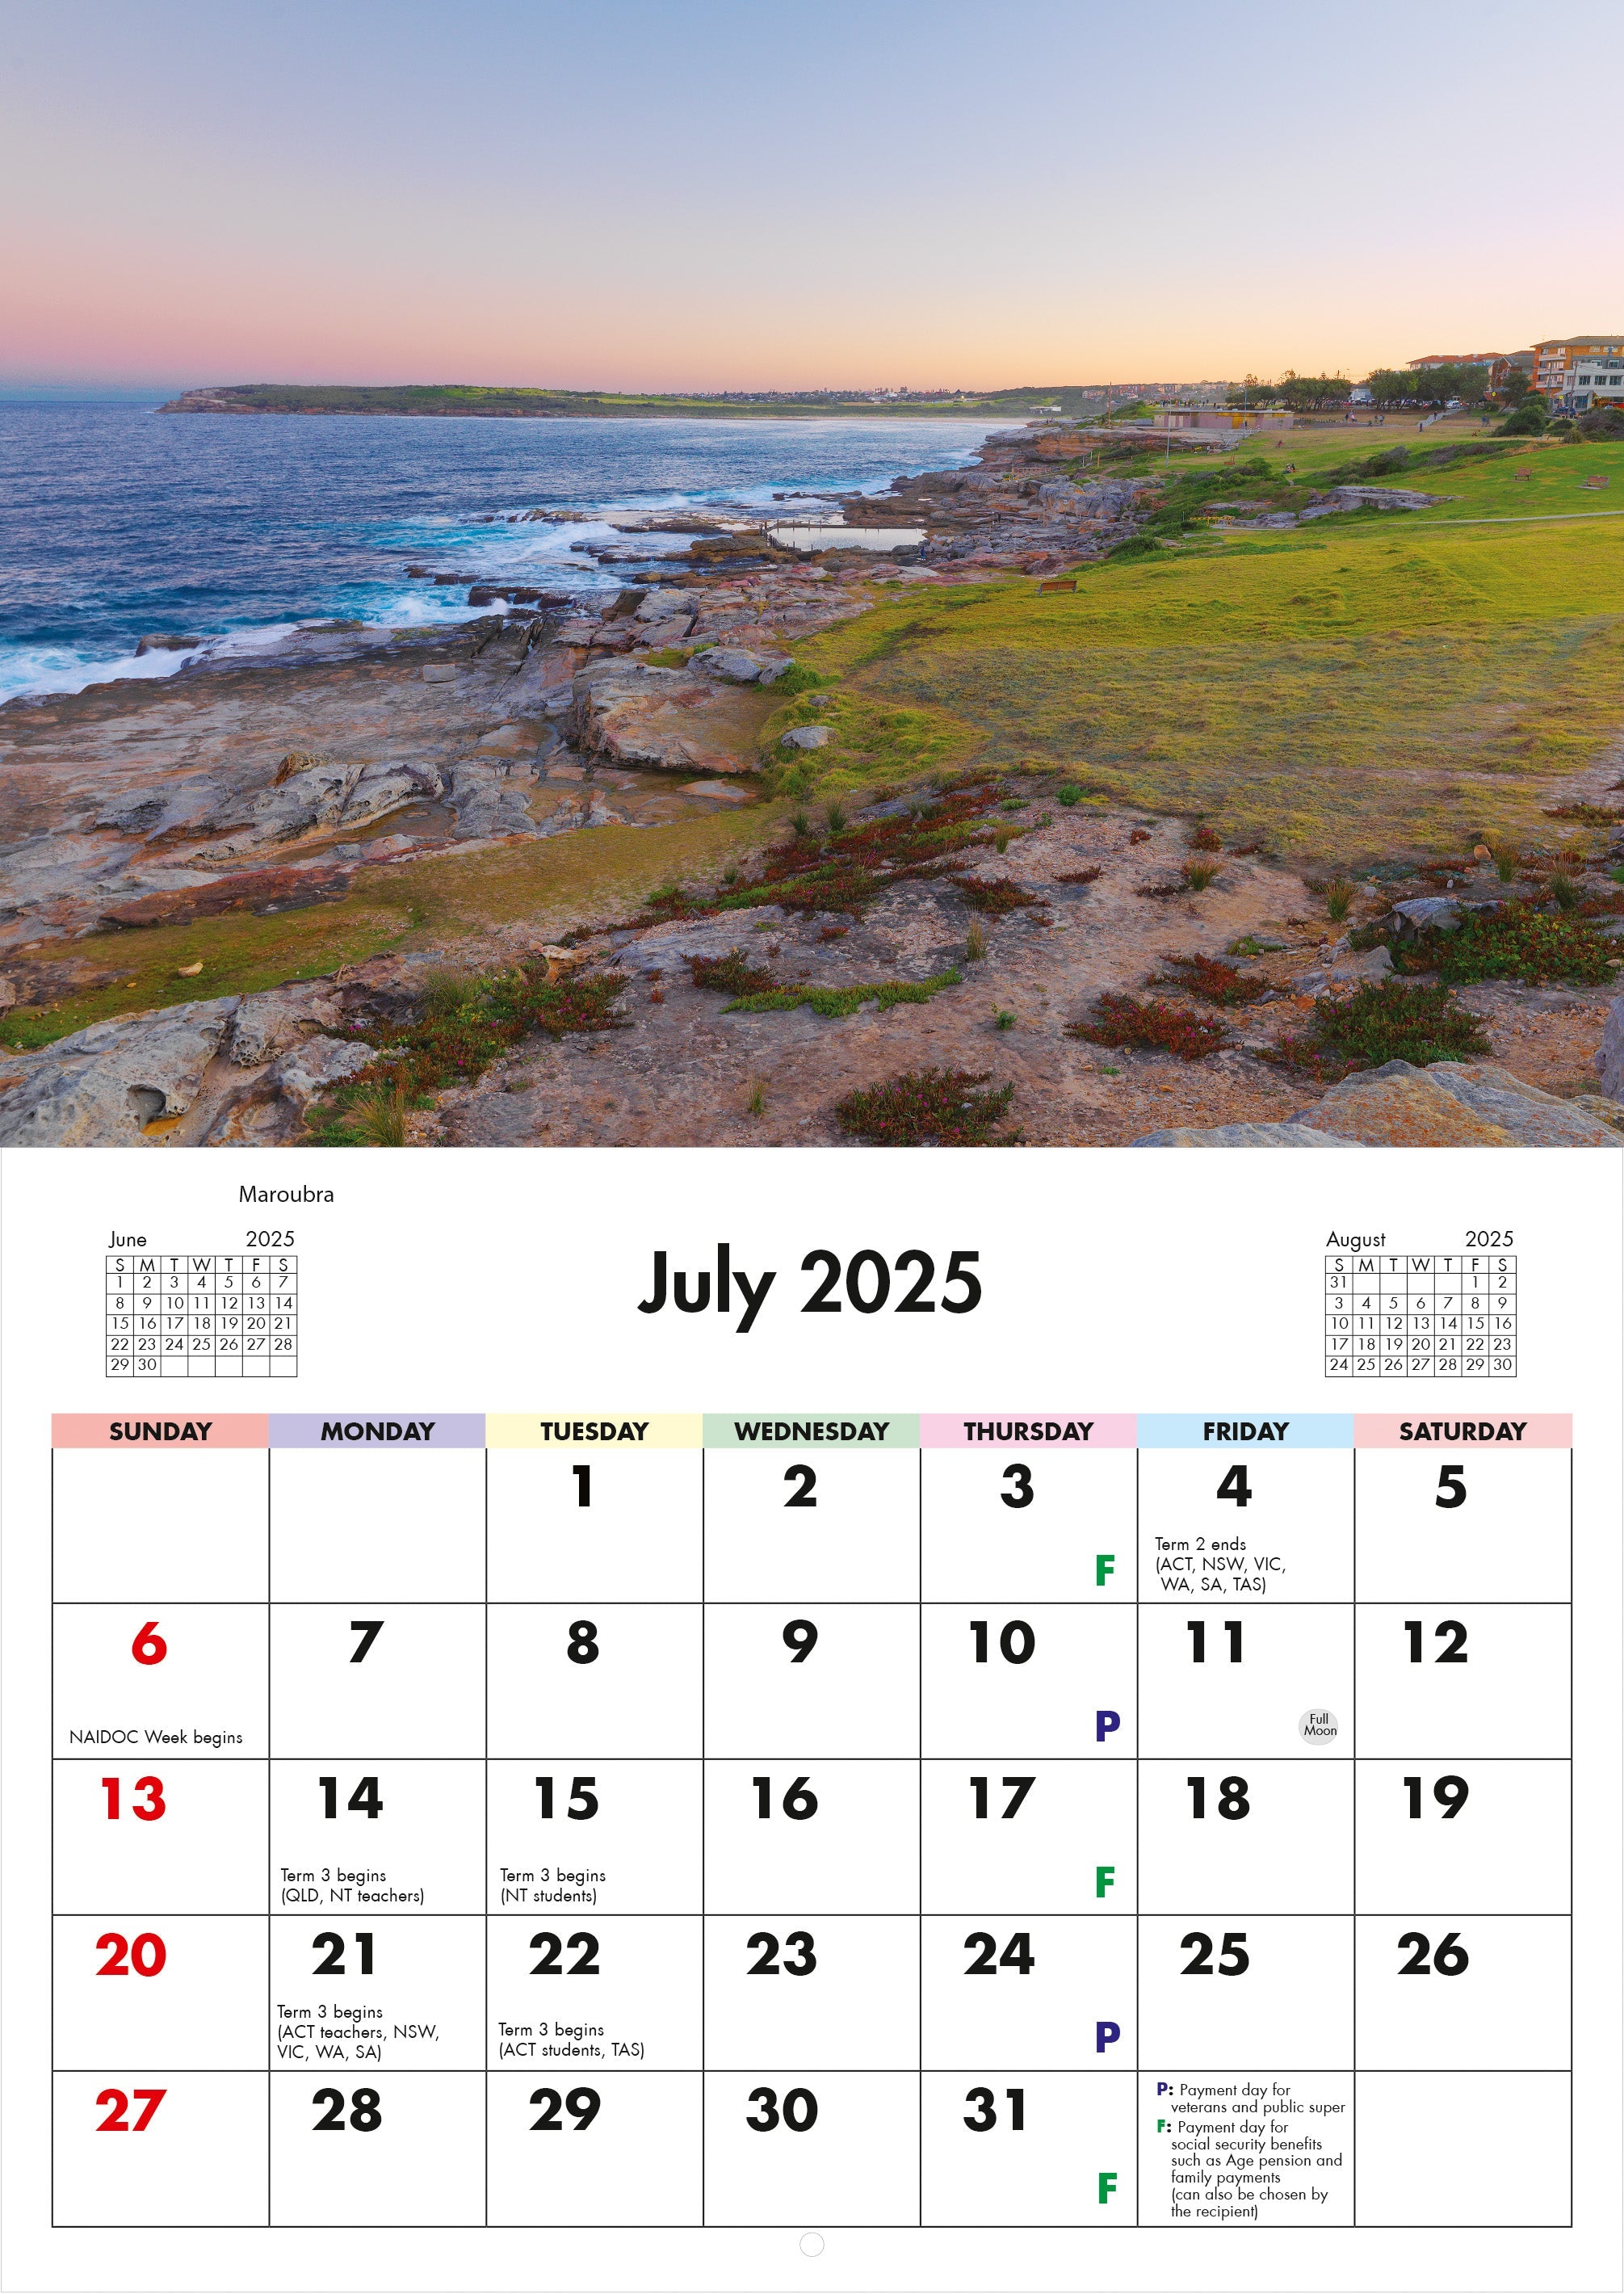 2025 Sydney Beaches - Horizontal Wall Calendar